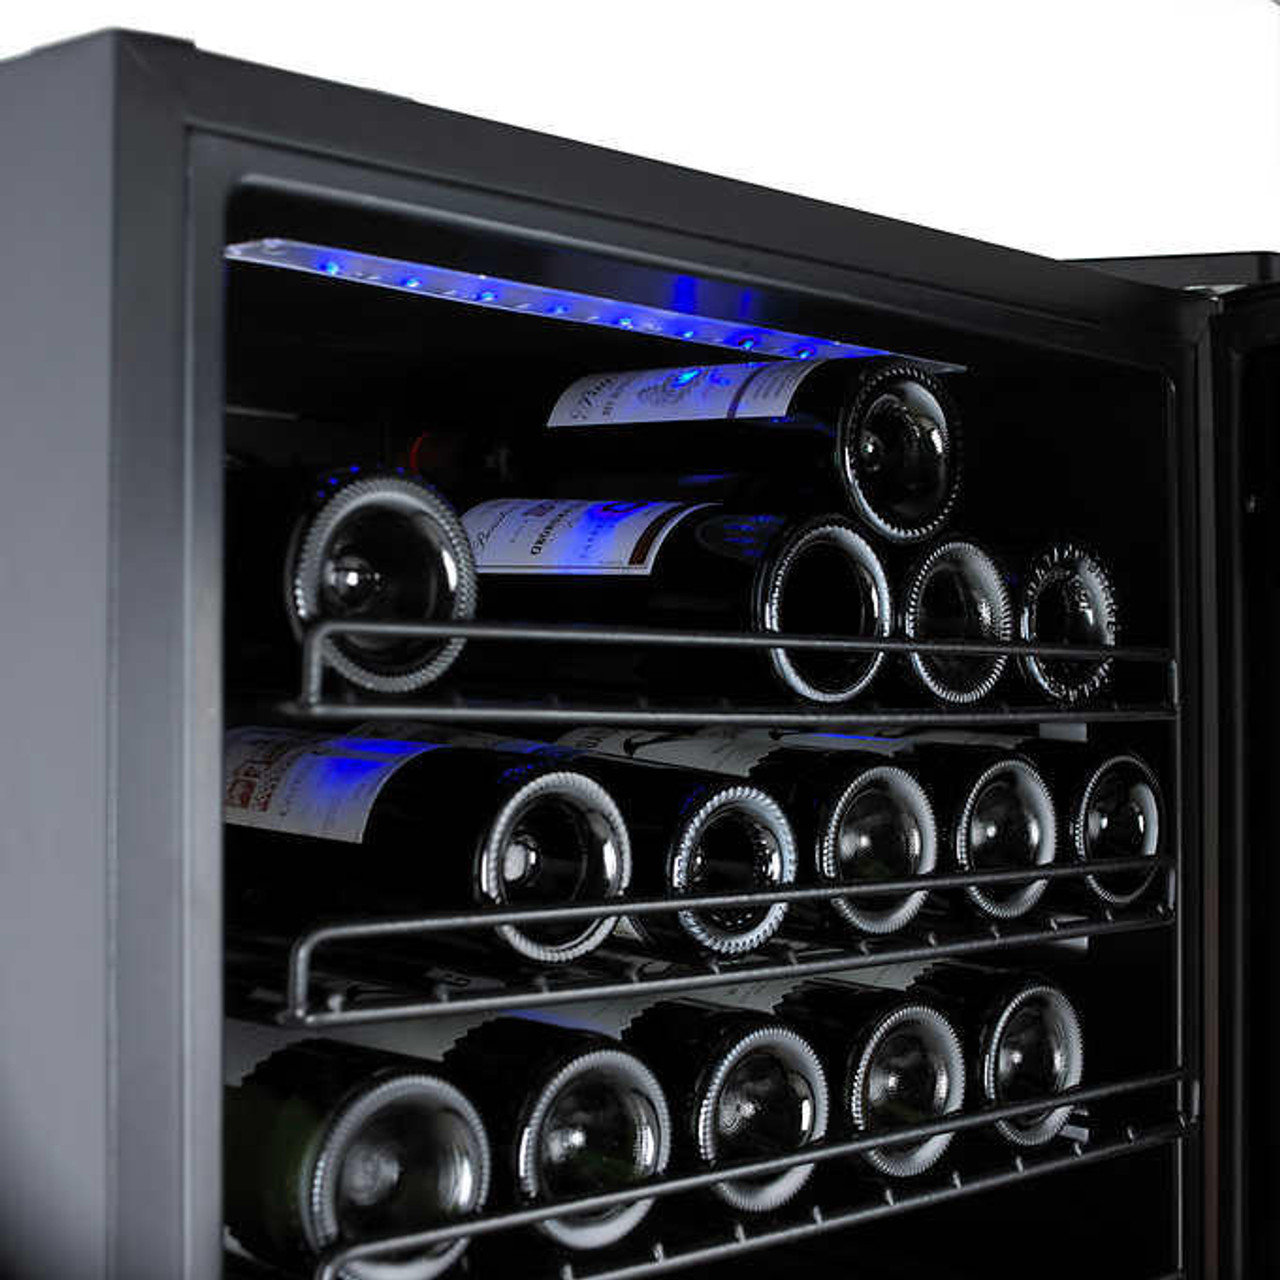 Sommelier 24 Bottle Dual Zone Wine Cellar Black